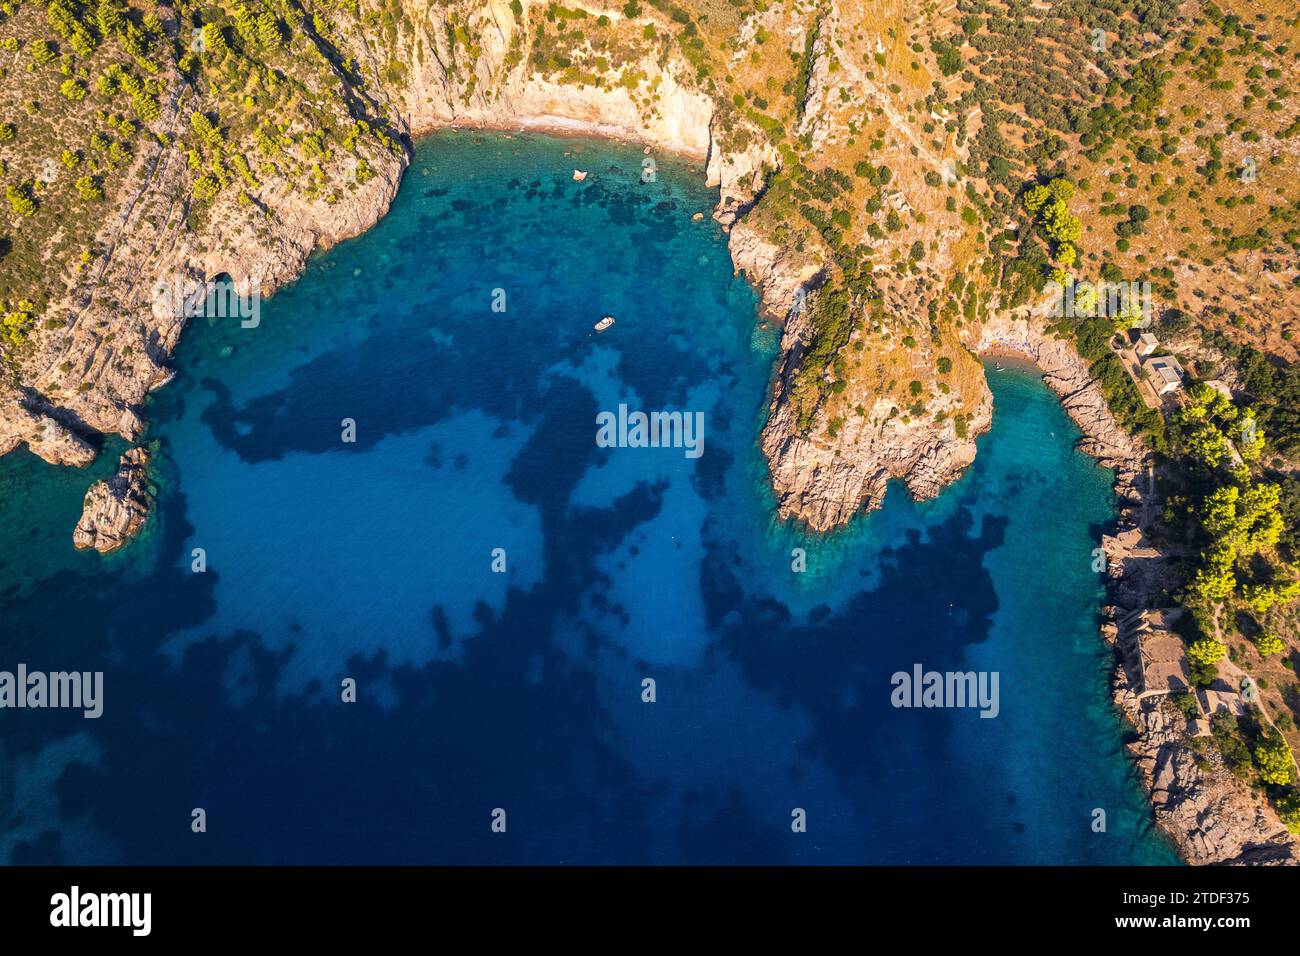 Baia di Ieranto vista dall'alto, Punta Campanella, Costiera Amalfitana, provincia di Napoli, regione Campania, Italia, Europa Foto Stock